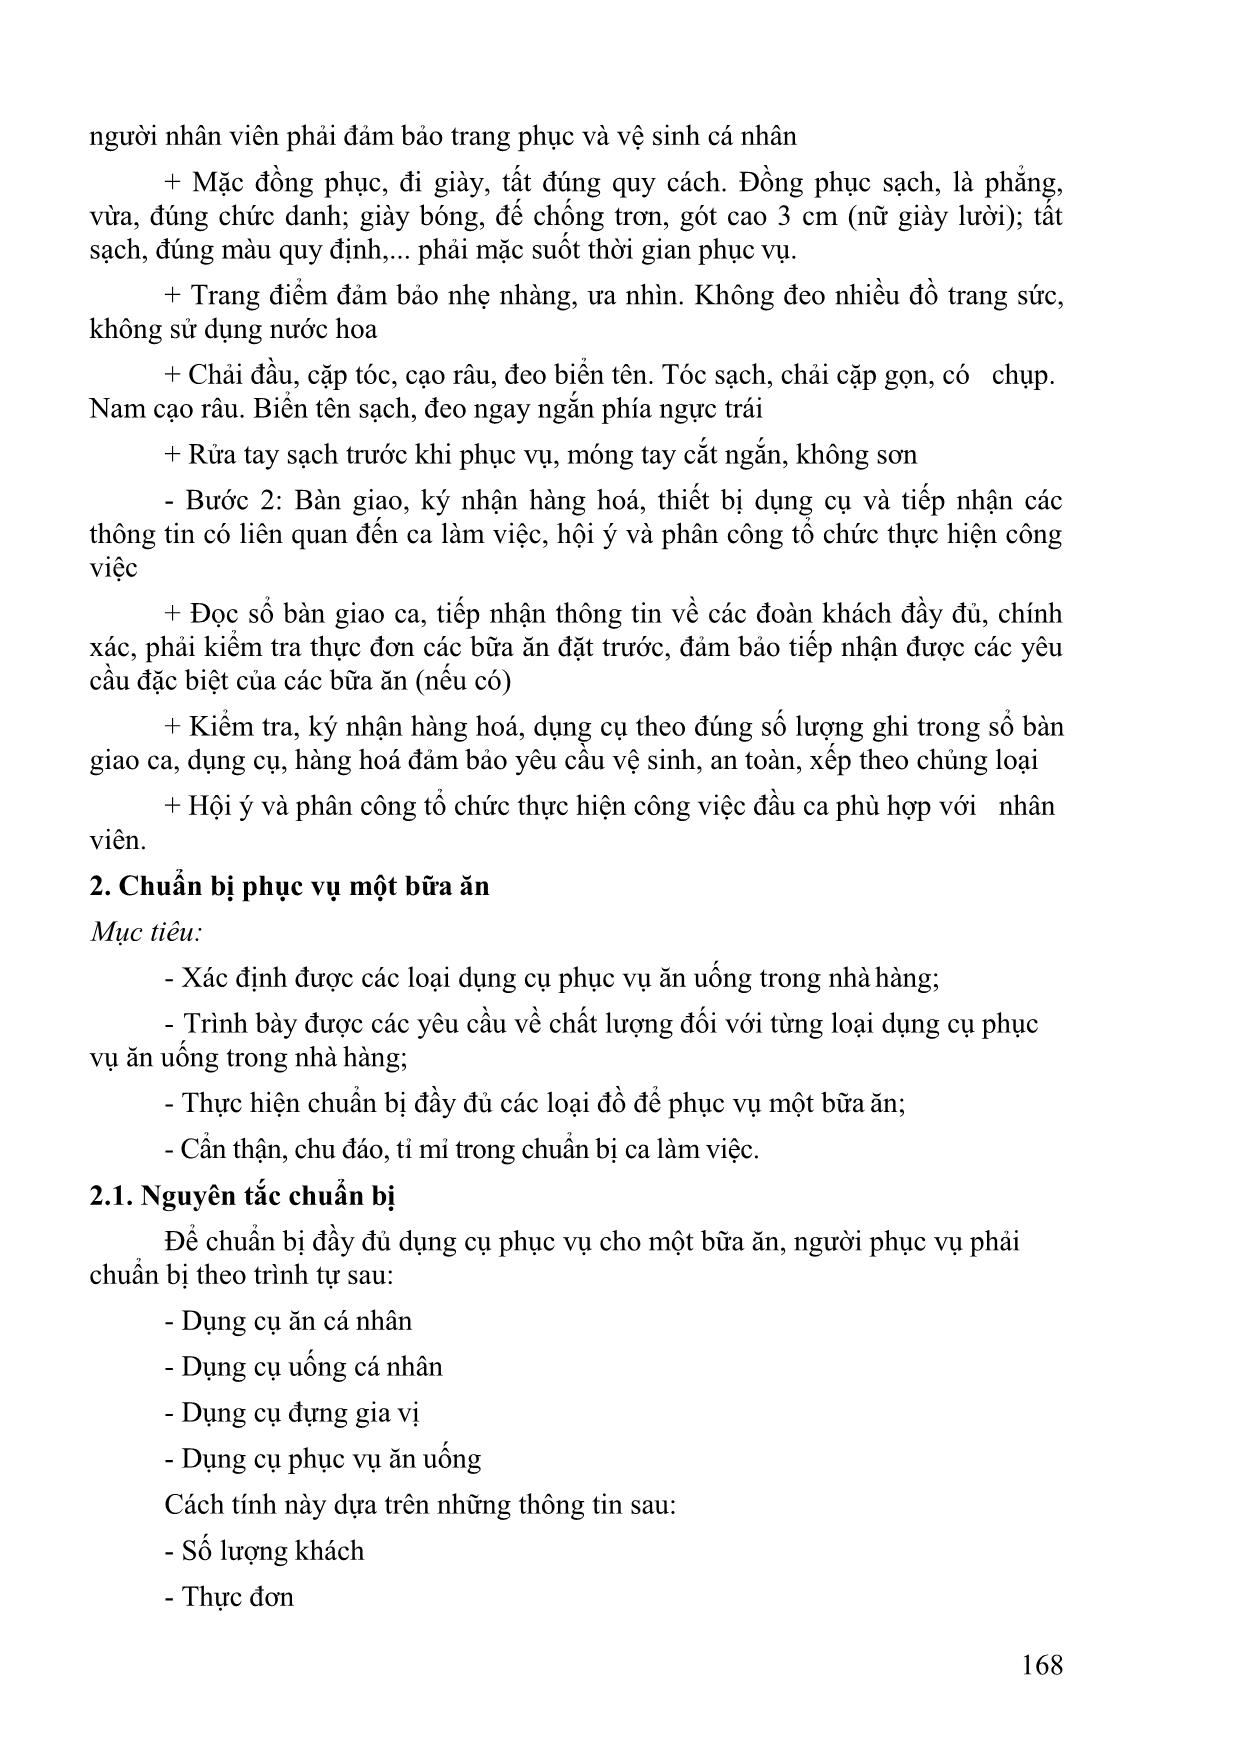 Giáo trình Nghiệp vụ bàn cơ bản (Phần 2) trang 4